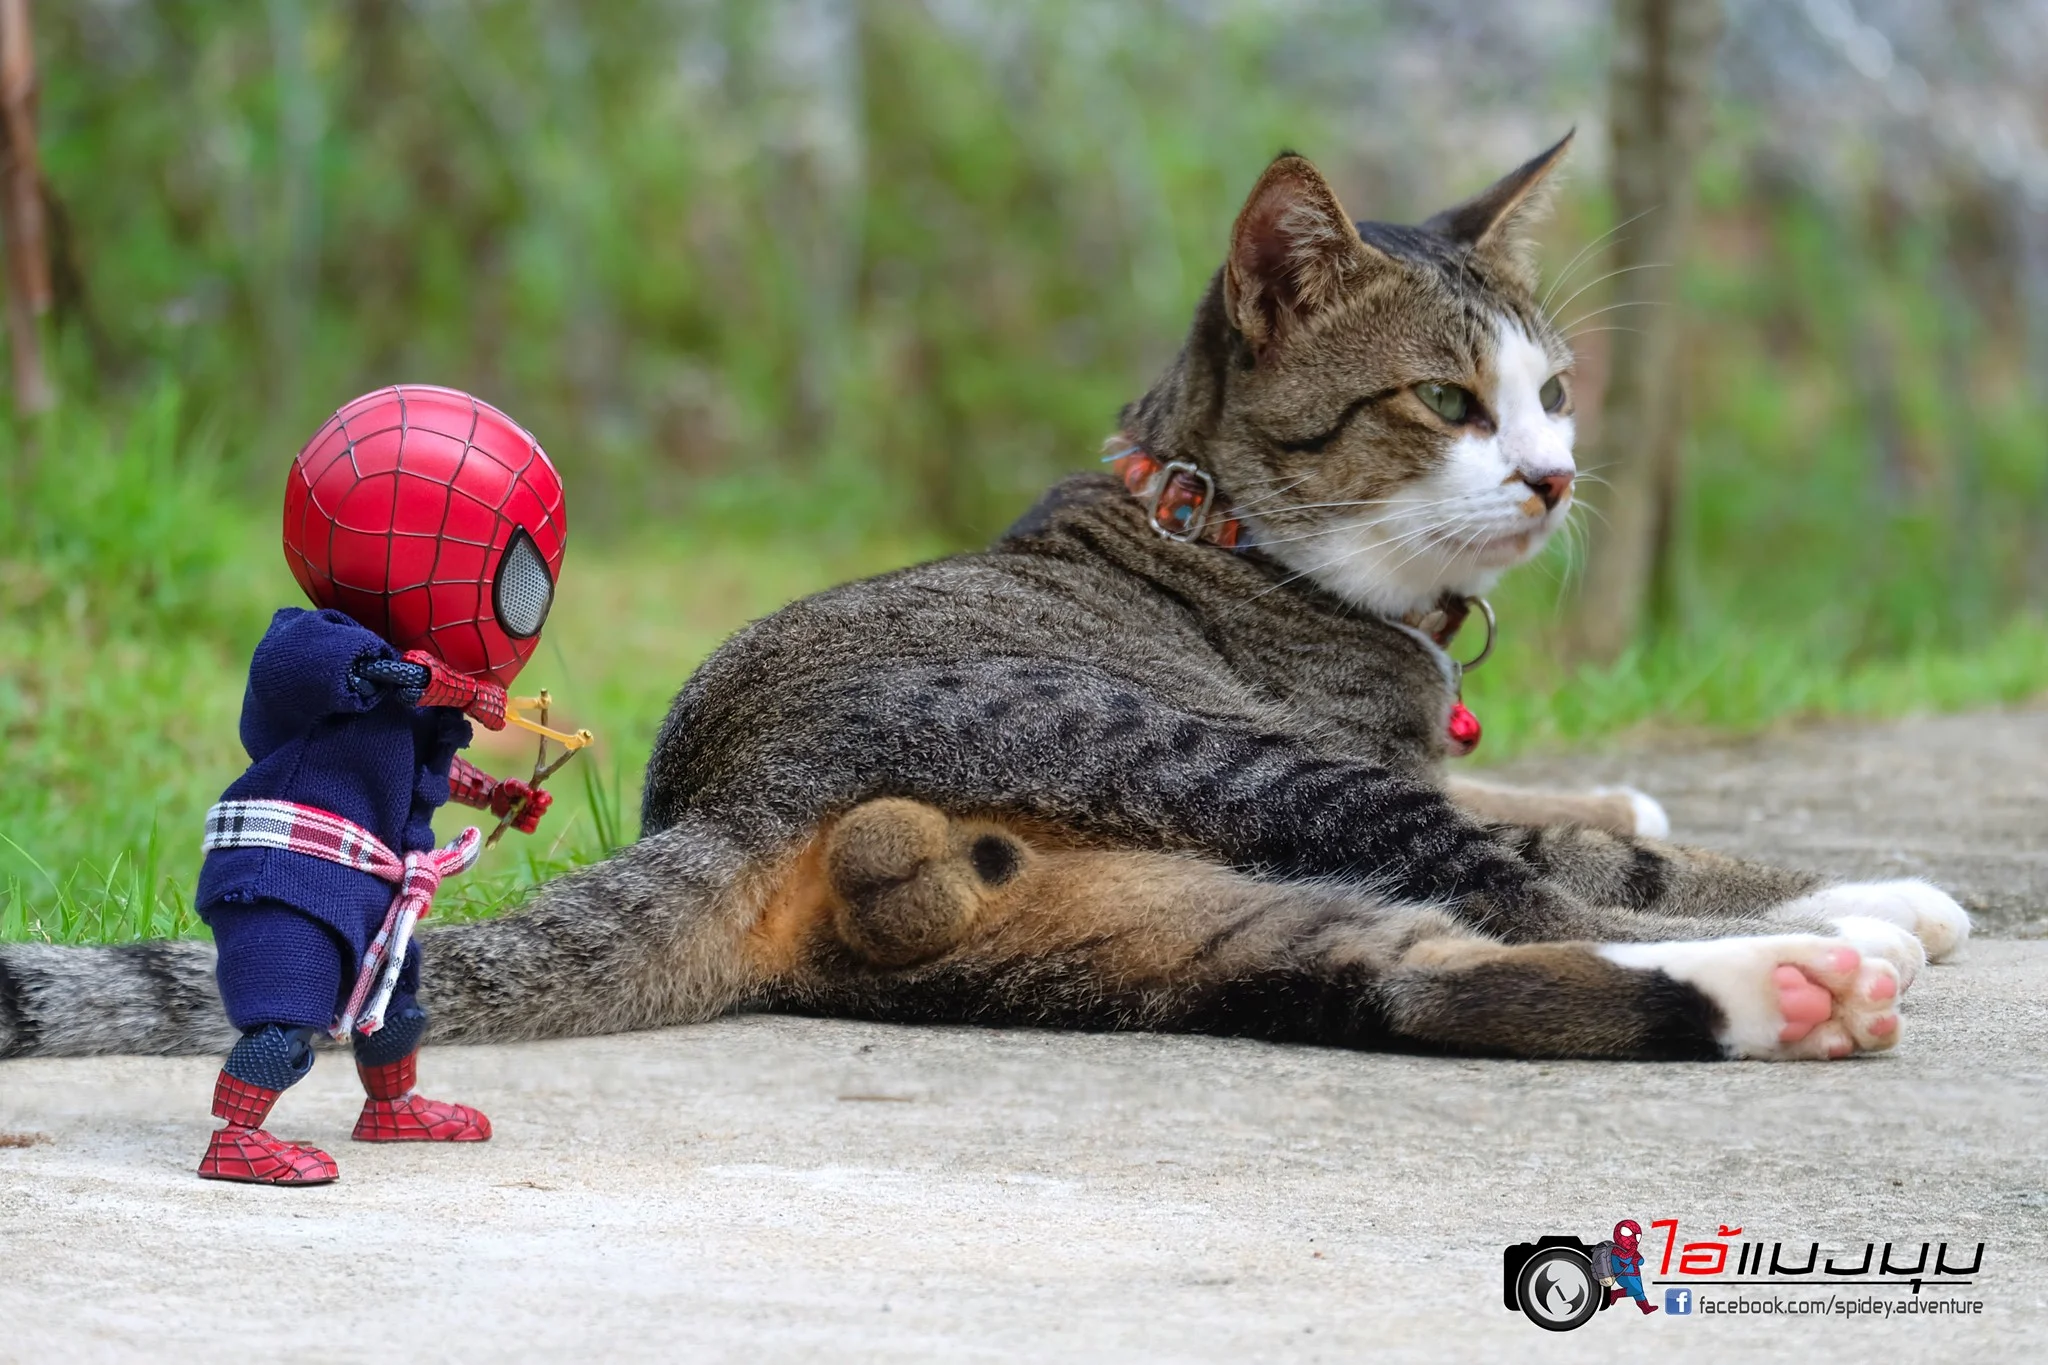 Художник добавил к фото с котиками изображение Человека-паука – это выглядит очень смешно - фото 459376